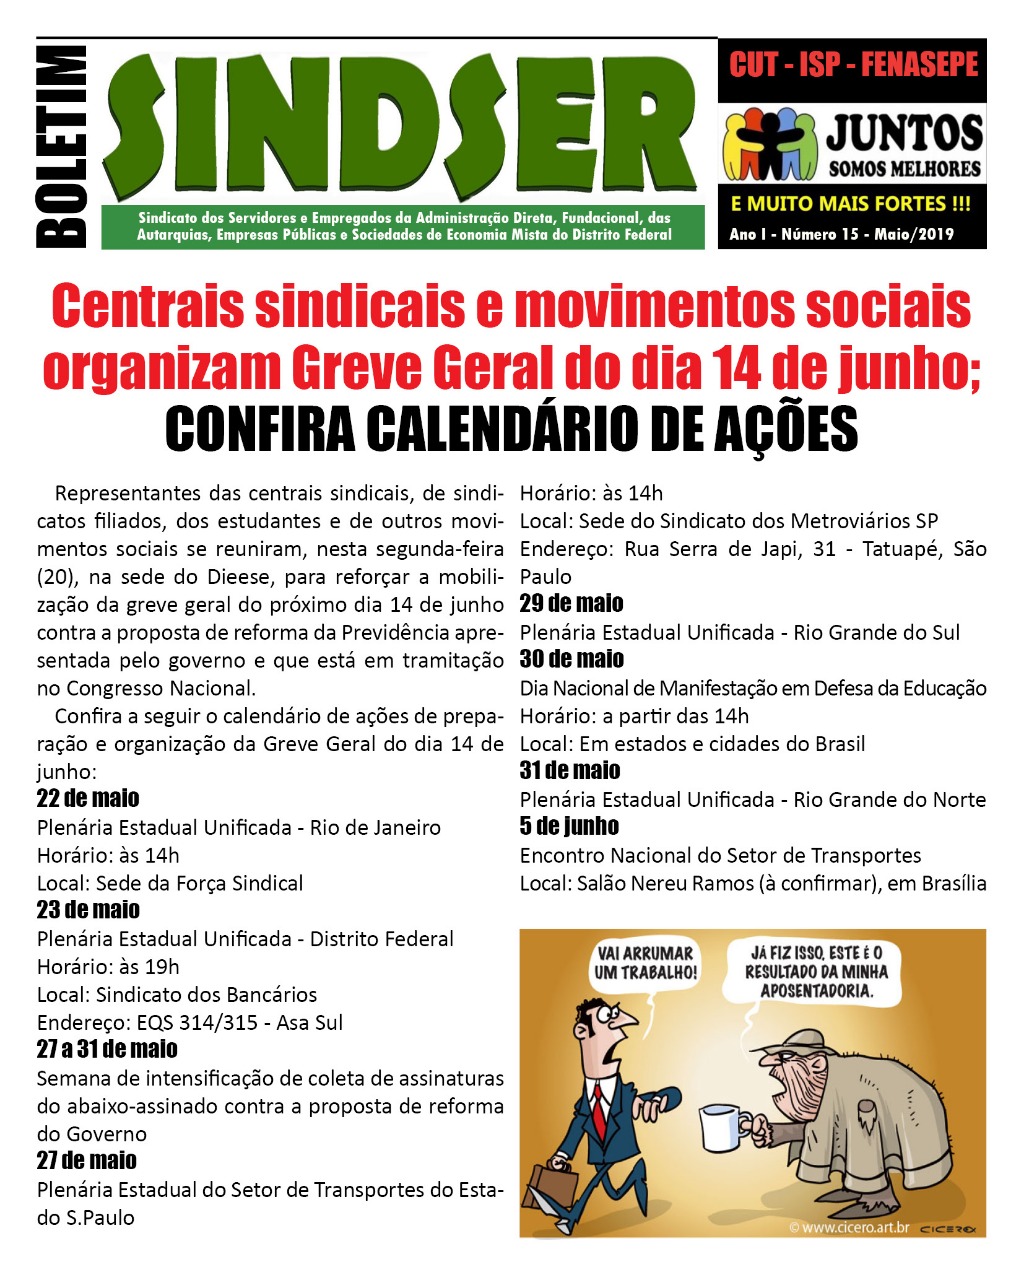 Centrais Sindicais e Movimentos Sociais organizam Greve Geral no dia 14 de Junho. Confira o Calendário de ações.